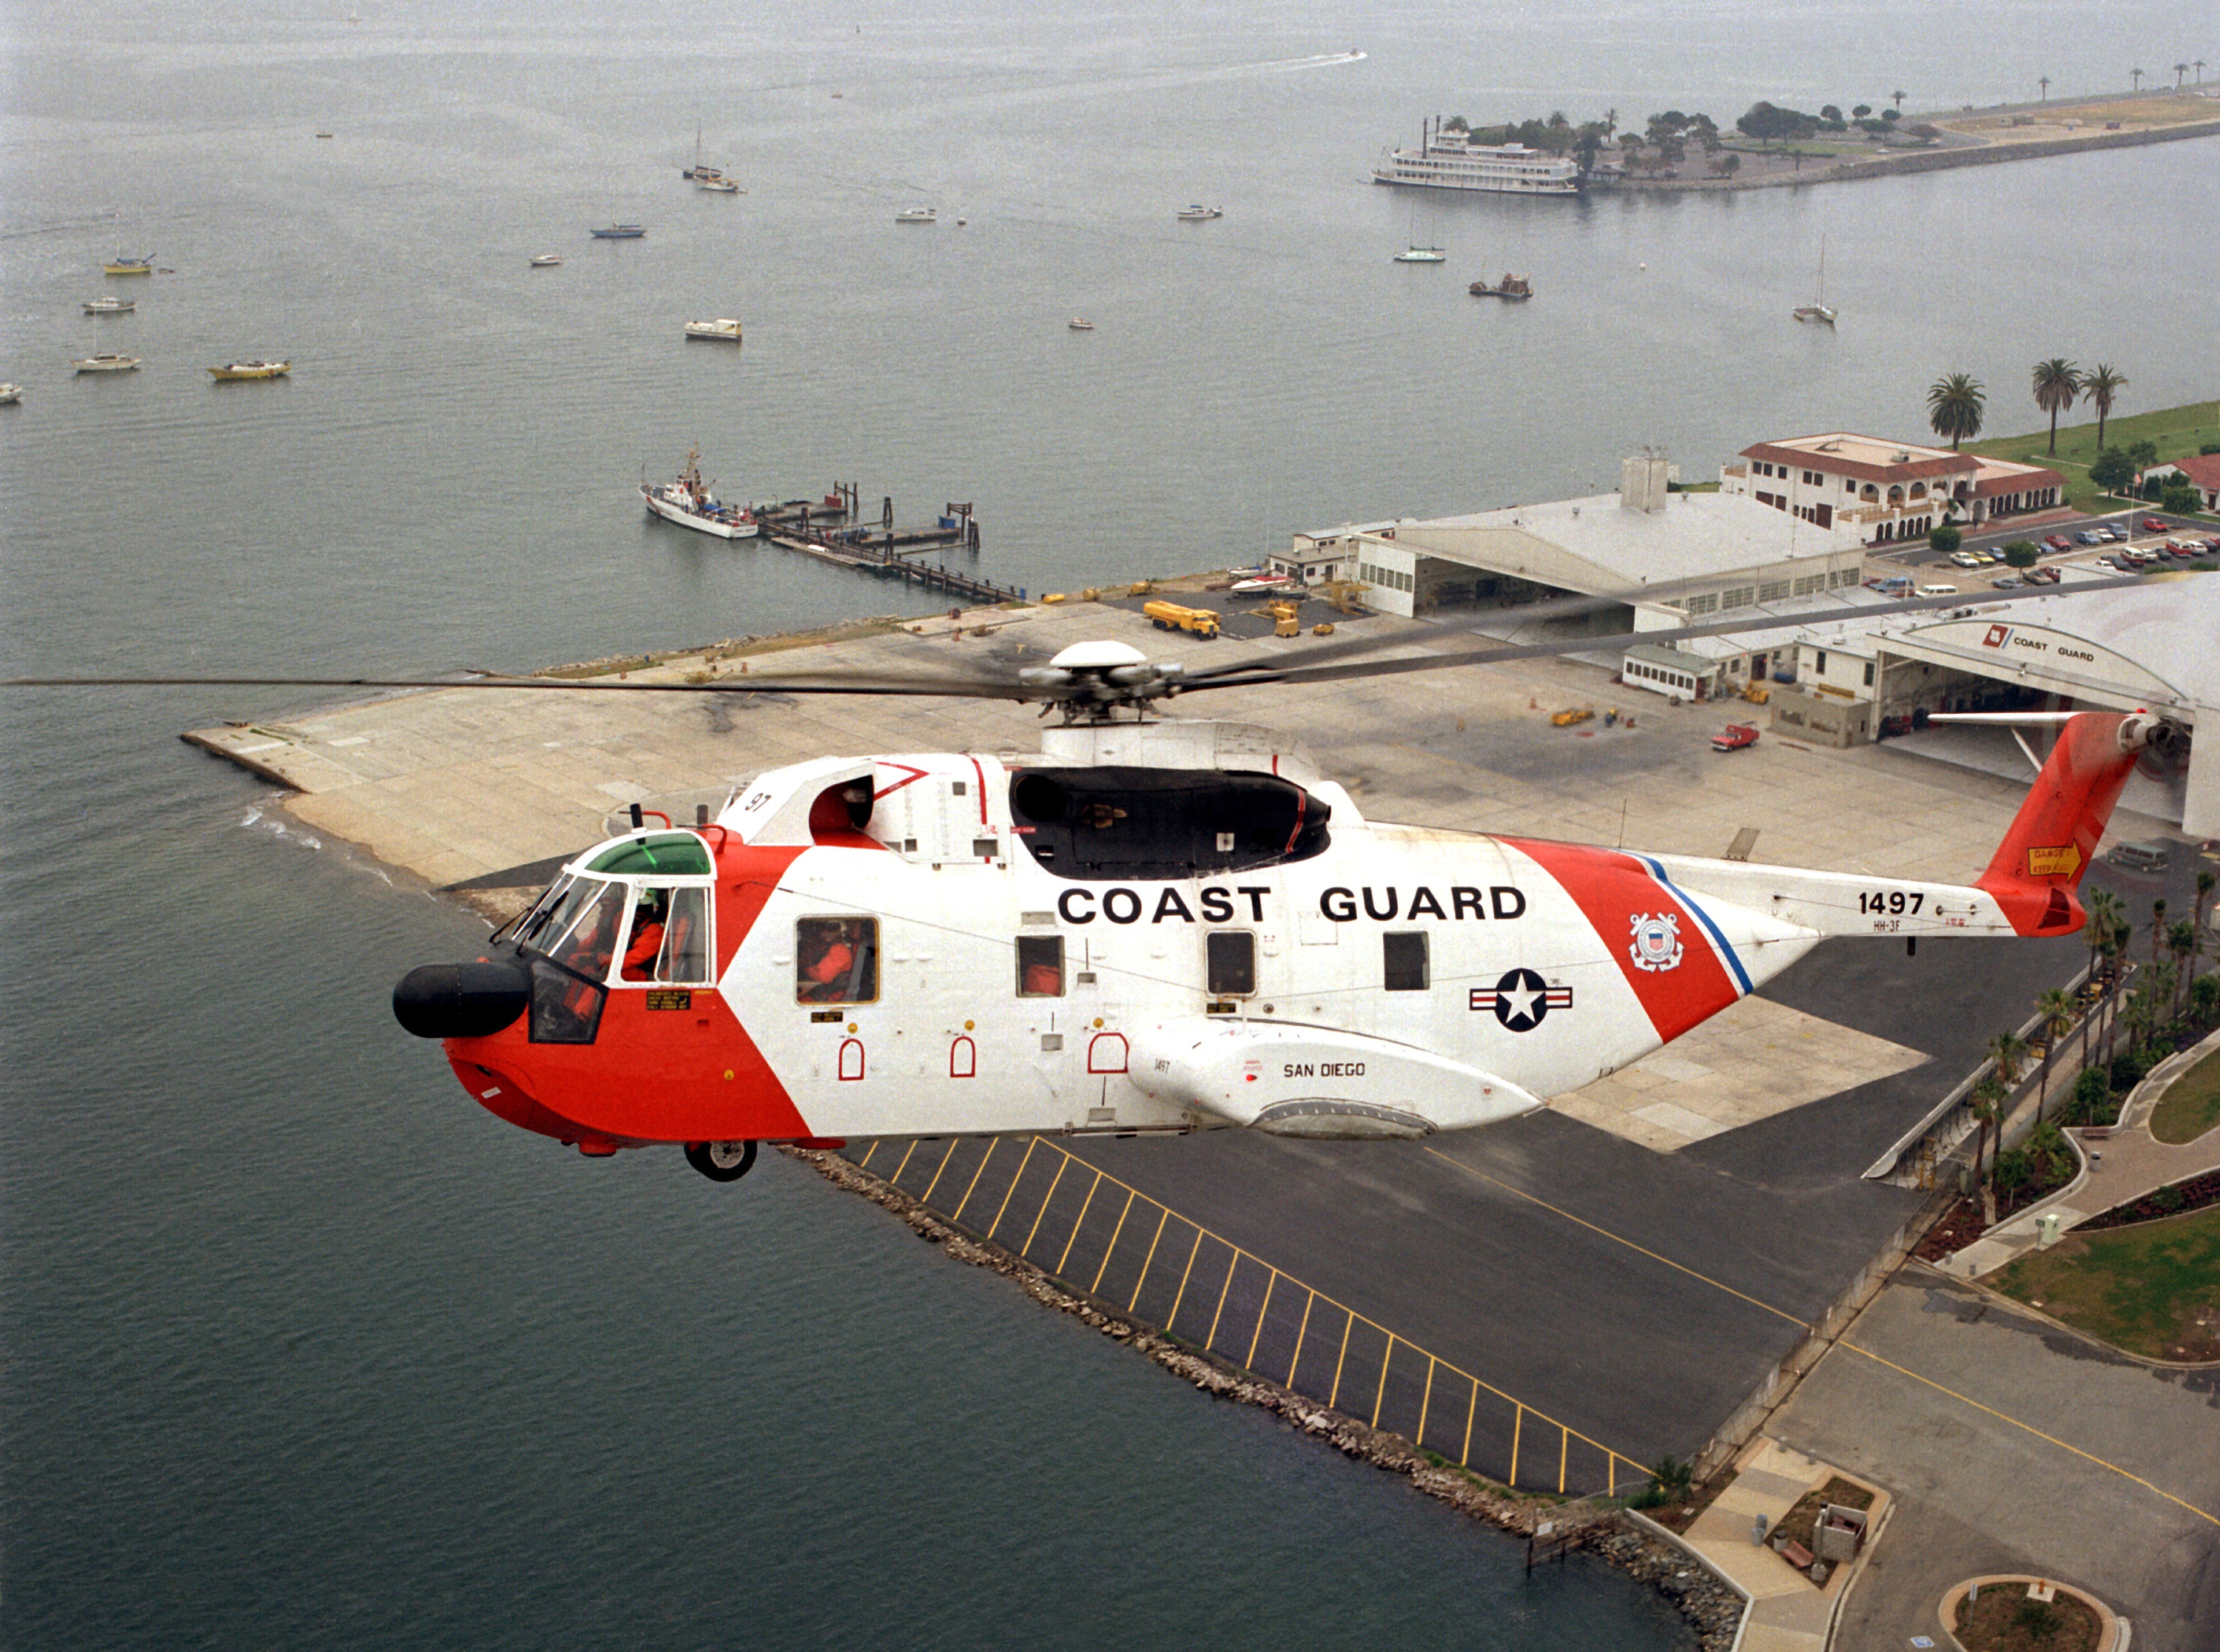 Coast guard photo